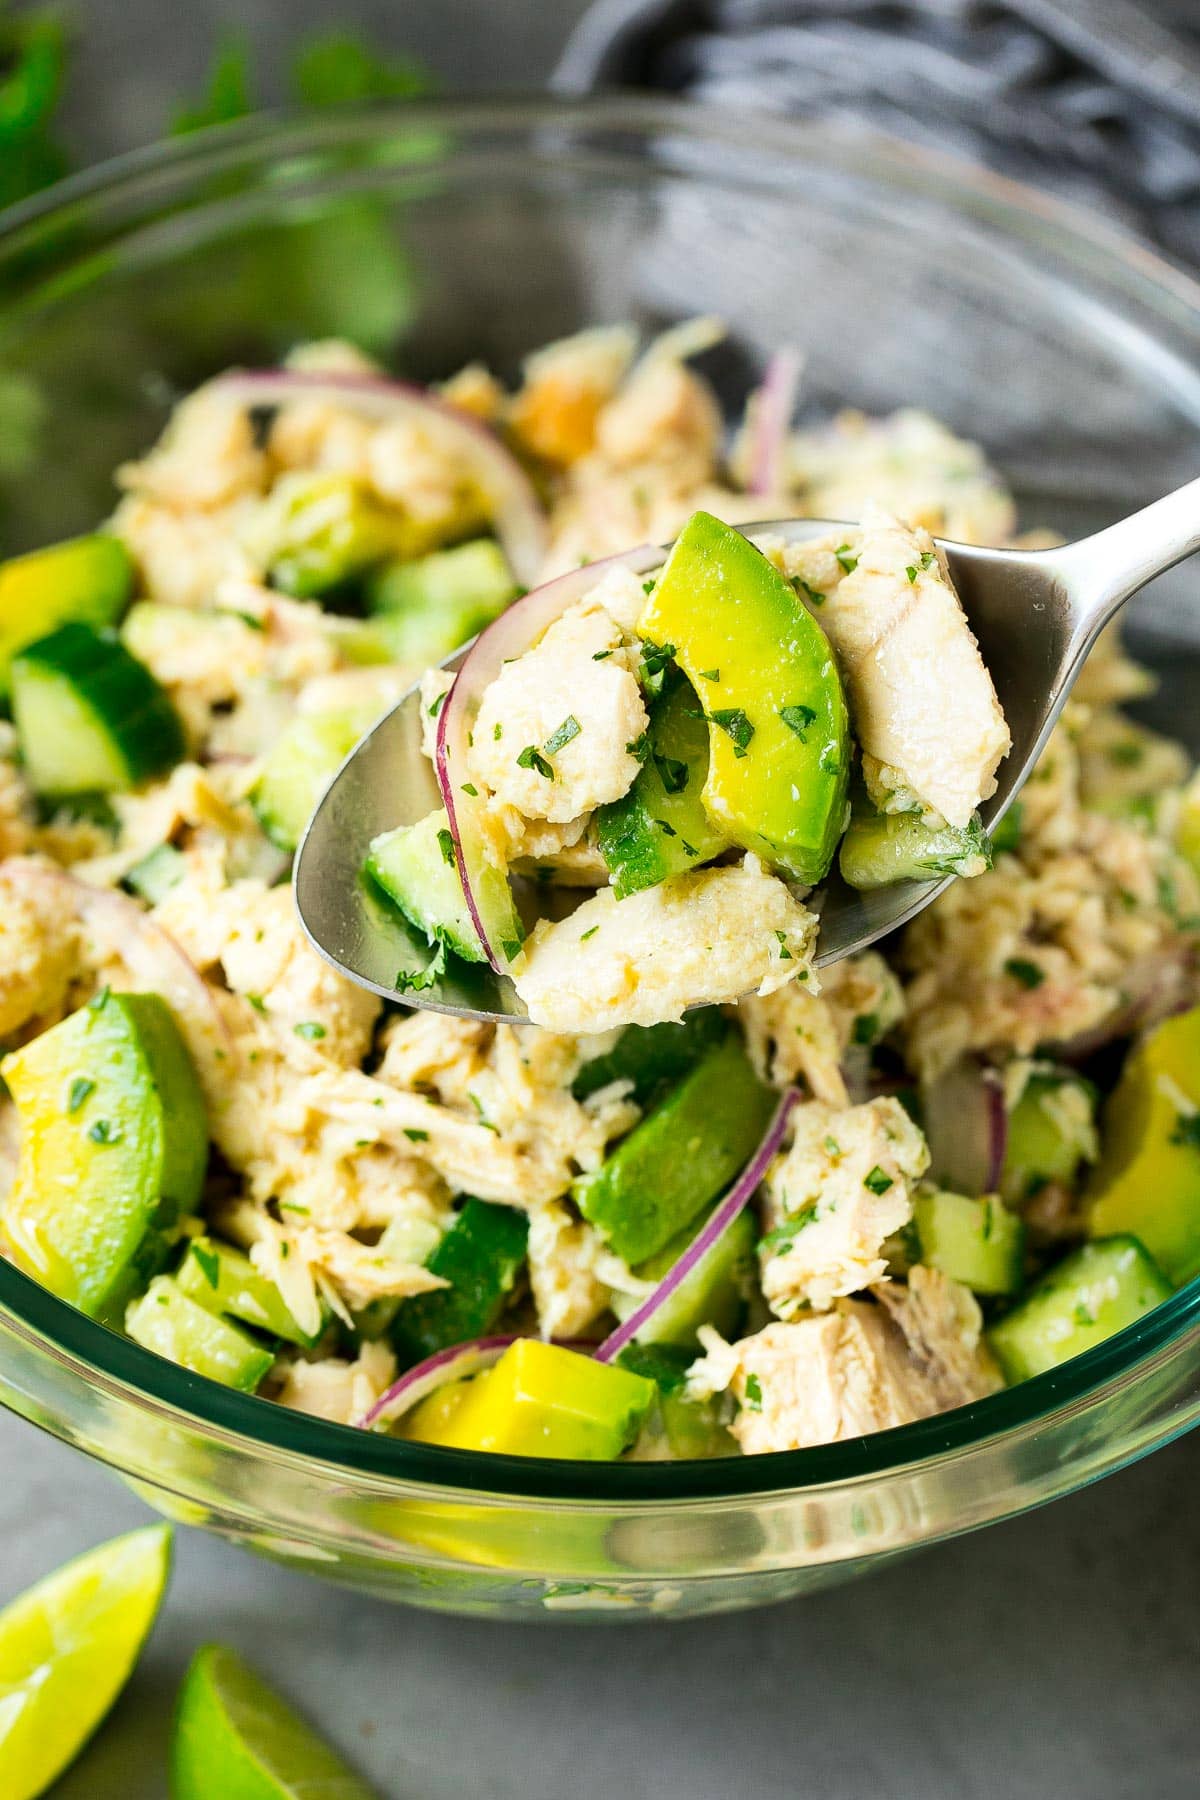 A spoon serving up avocado tuna salad.